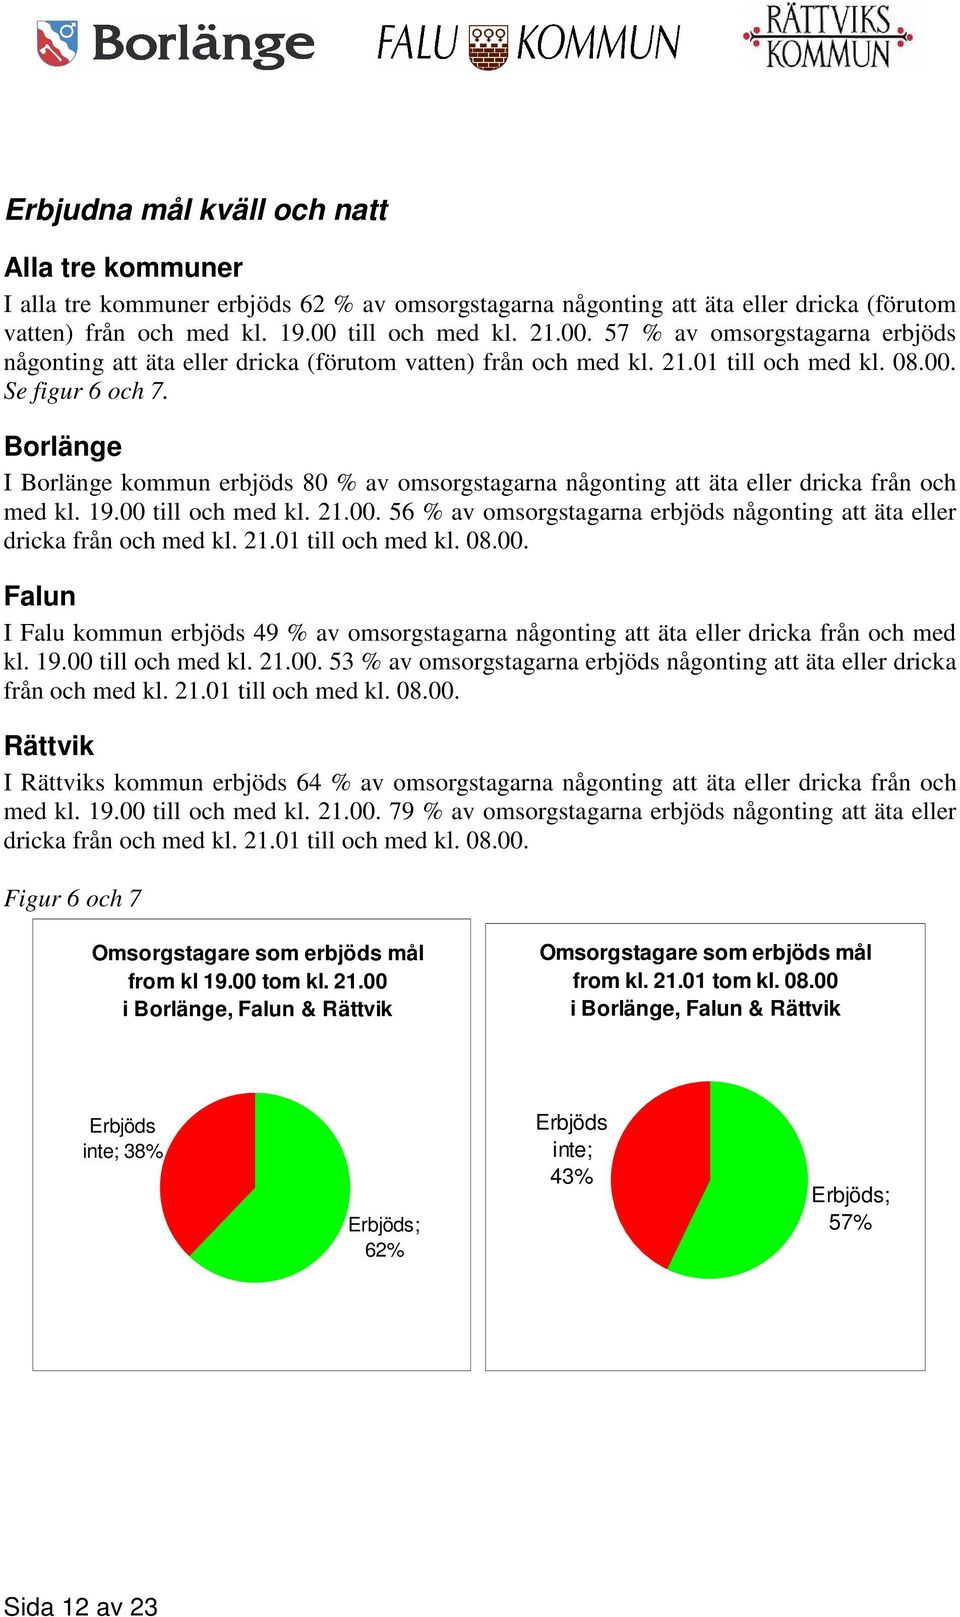 Borlänge I Borlänge kommun erbjöds 80 % av omsorgstagarna någonting att äta eller dricka från och med kl. 19.00 till och med kl. 21.00. 56 % av omsorgstagarna erbjöds någonting att äta eller dricka från och med kl.